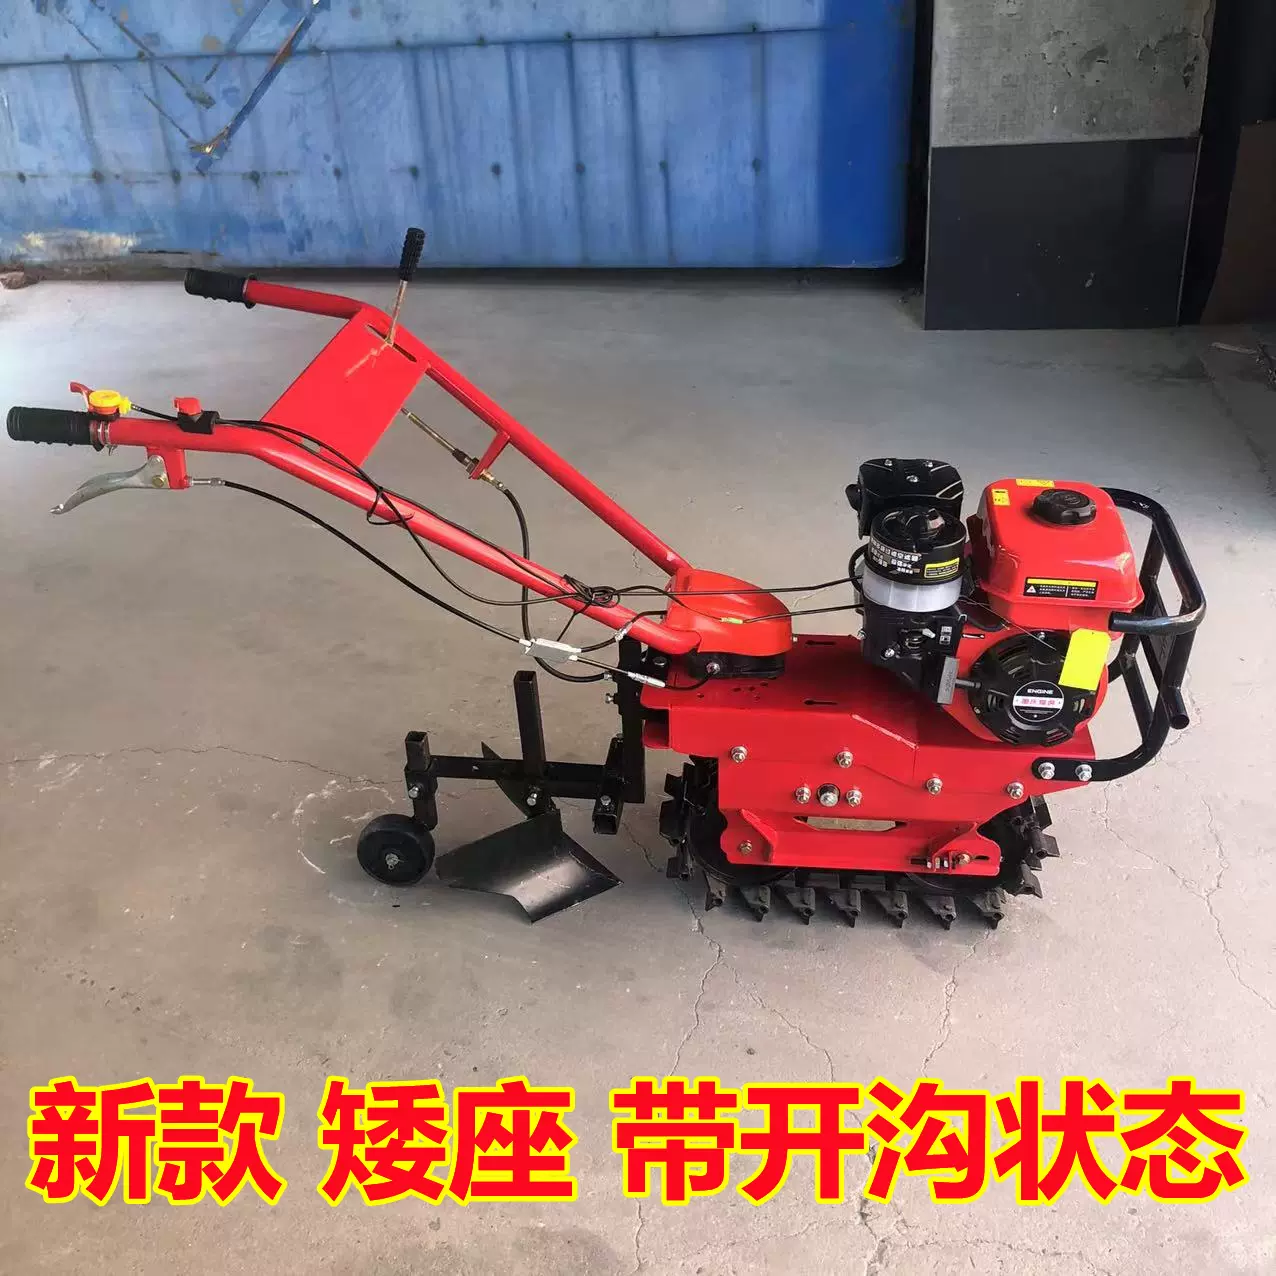 鏈軌小型耕耘機翻地機汽油柴油自走式開溝機多功能開溝鬆土施肥犁地機-Taobao